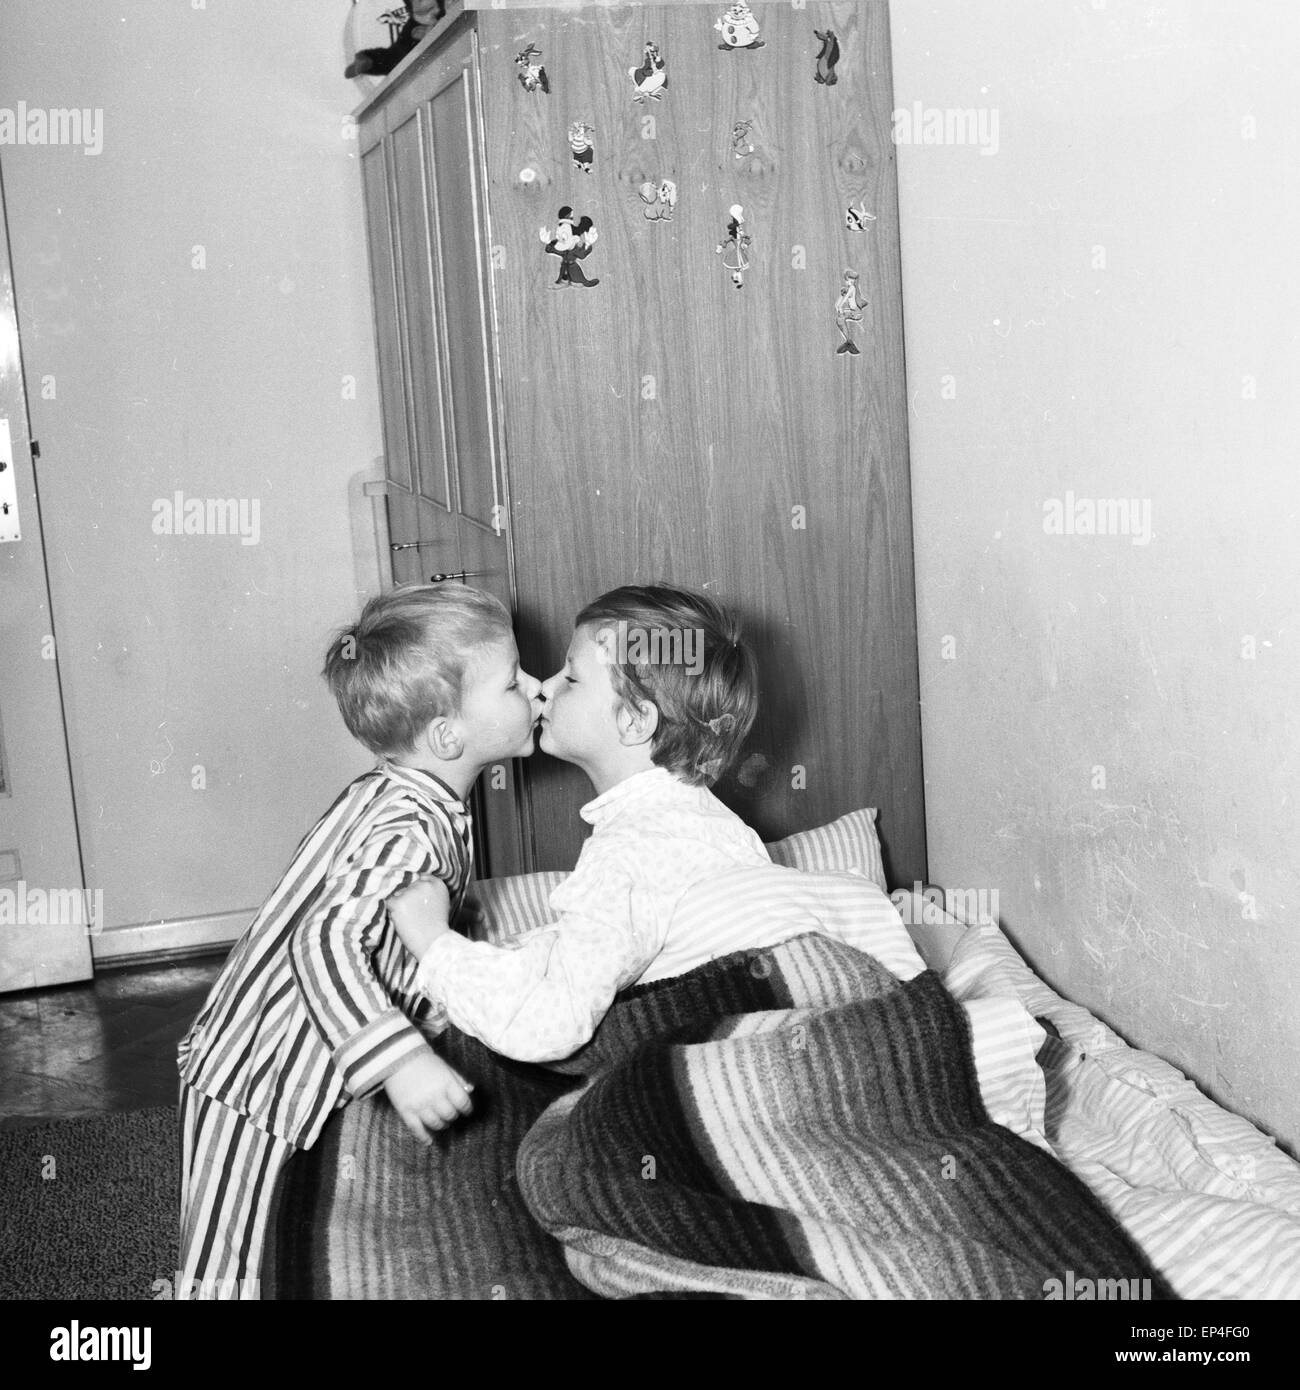 Zwei Kinder beim Gute Nach Kuss, Deutschland 1960 er Jahre. Deux enfants baisers bonne nuit, l'Allemagne des années 1960. Banque D'Images